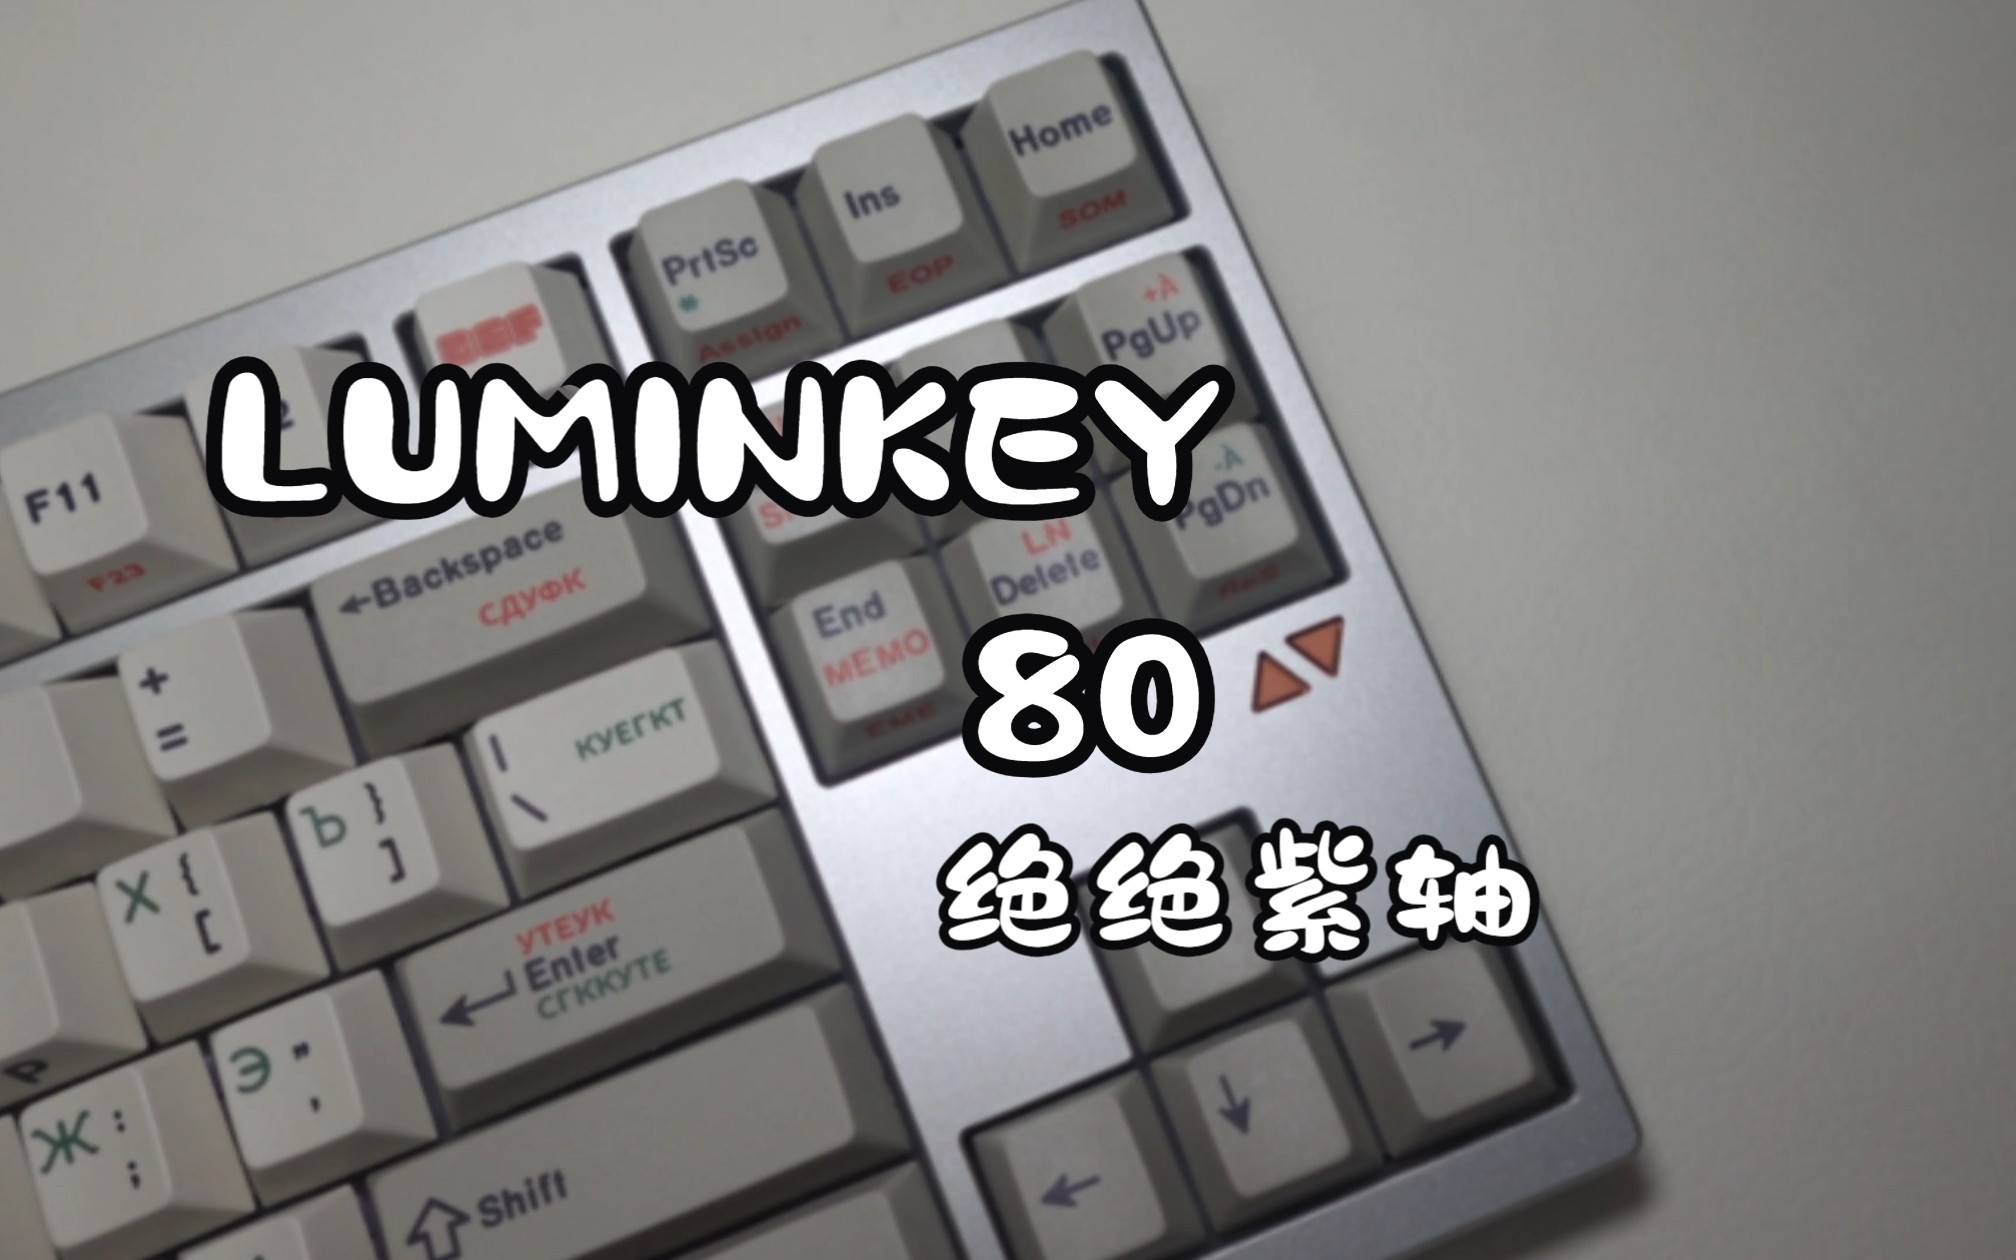 一把现货发售的三模80配列键盘-LUMINKEY 80，1288的价格算是一把入门进阶版的套件了，成品价格1688，不要太贴心